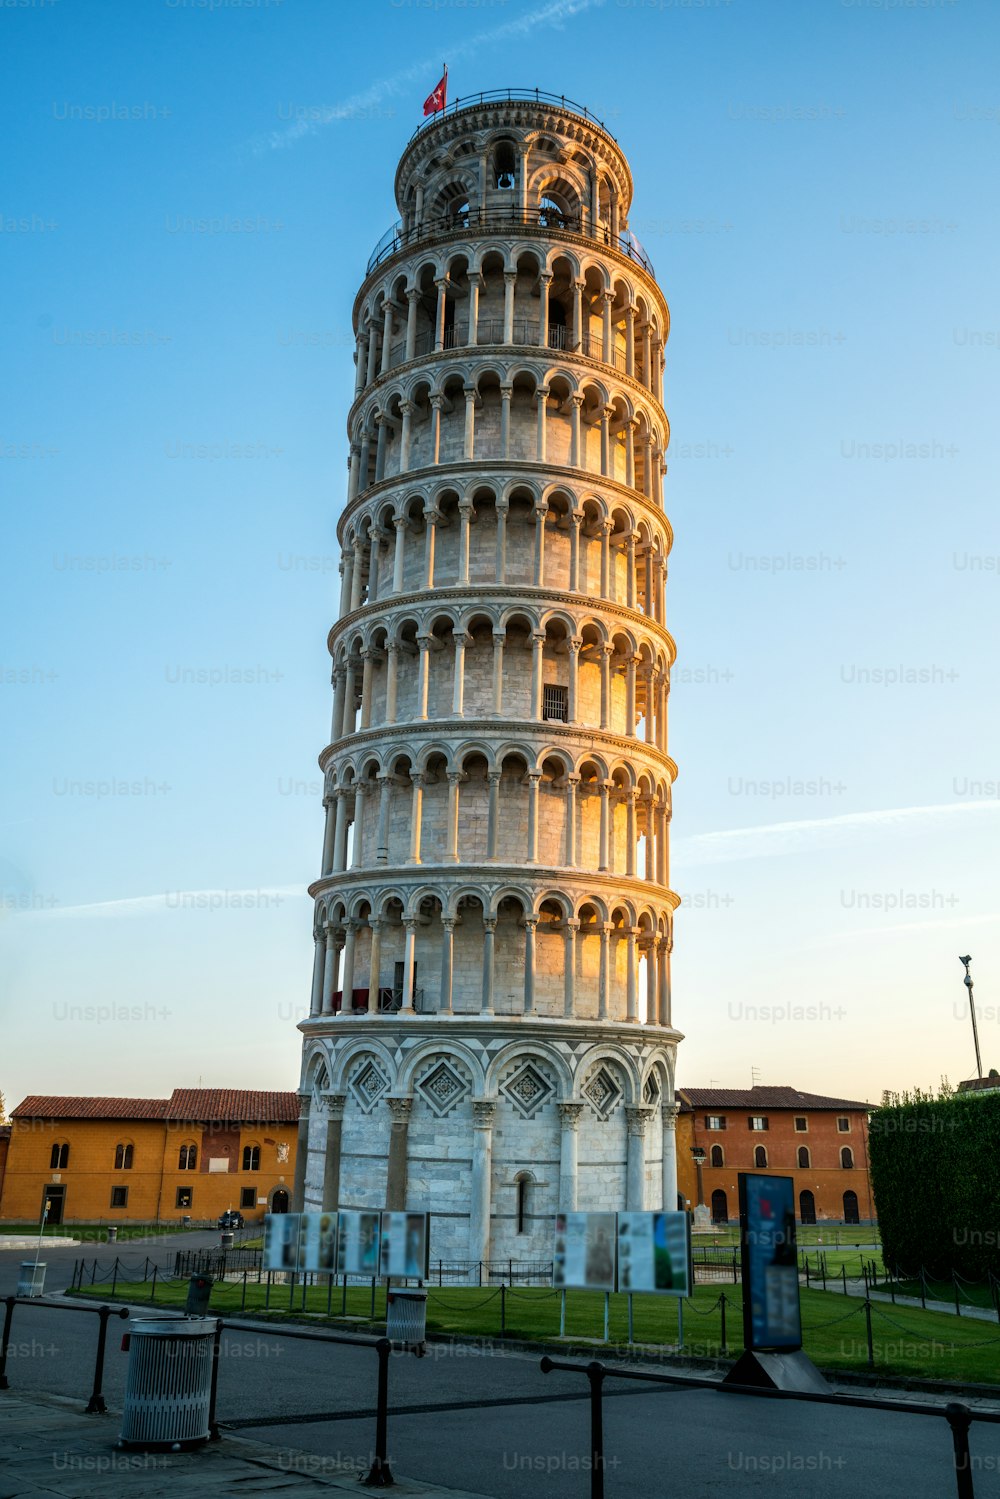 Tour penchée de Pise à Pise, Italie - Tour penchée de Pise connue dans le monde entier pour son inclinaison involontaire et sa célèbre destination de voyage en Italie. Il est situé près de la cathédrale de Pise.